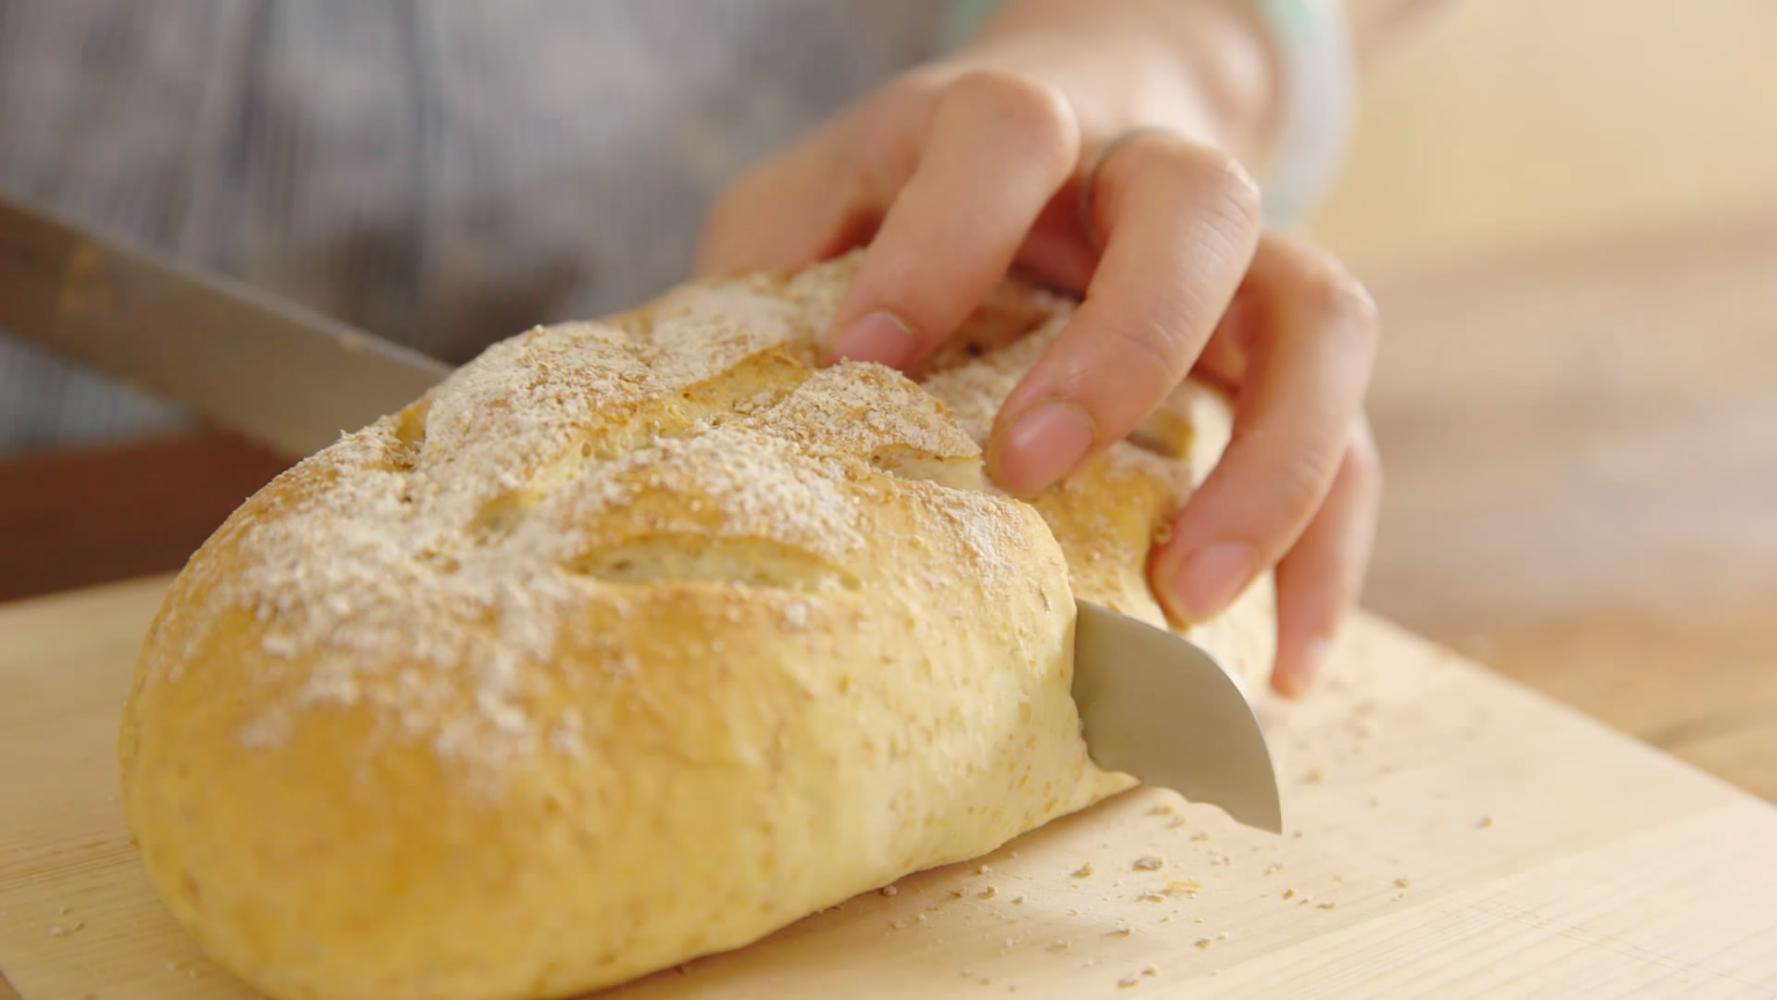 教你1招软欧面包制作技巧,轻松揉出手套膜